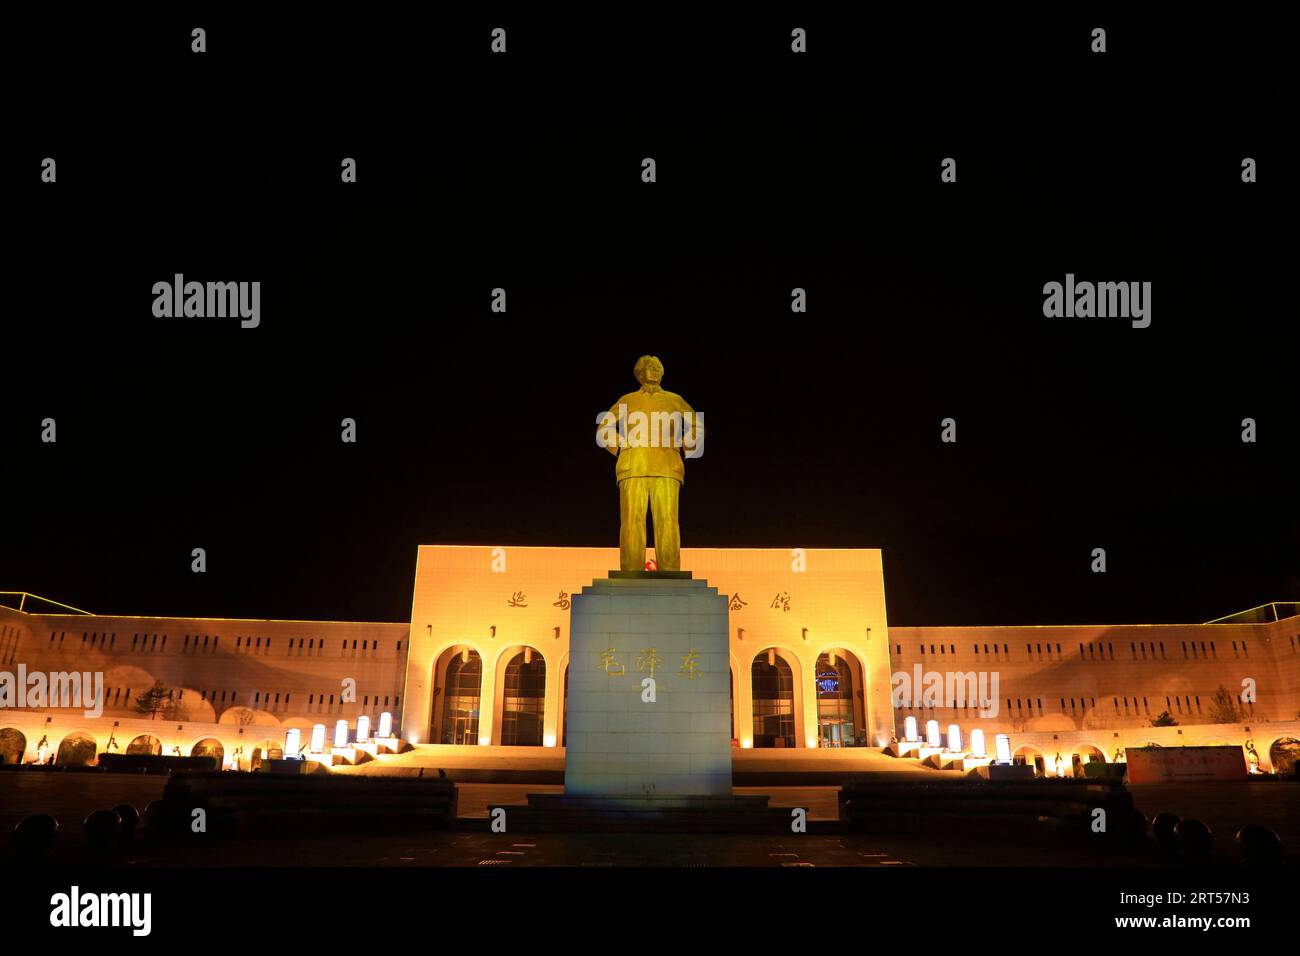 Yan'an City - 2 avril 2017 : sculpture de Mao Zedong dans la nuit, ville de yan'an, province du Shaanxi, Chine Banque D'Images